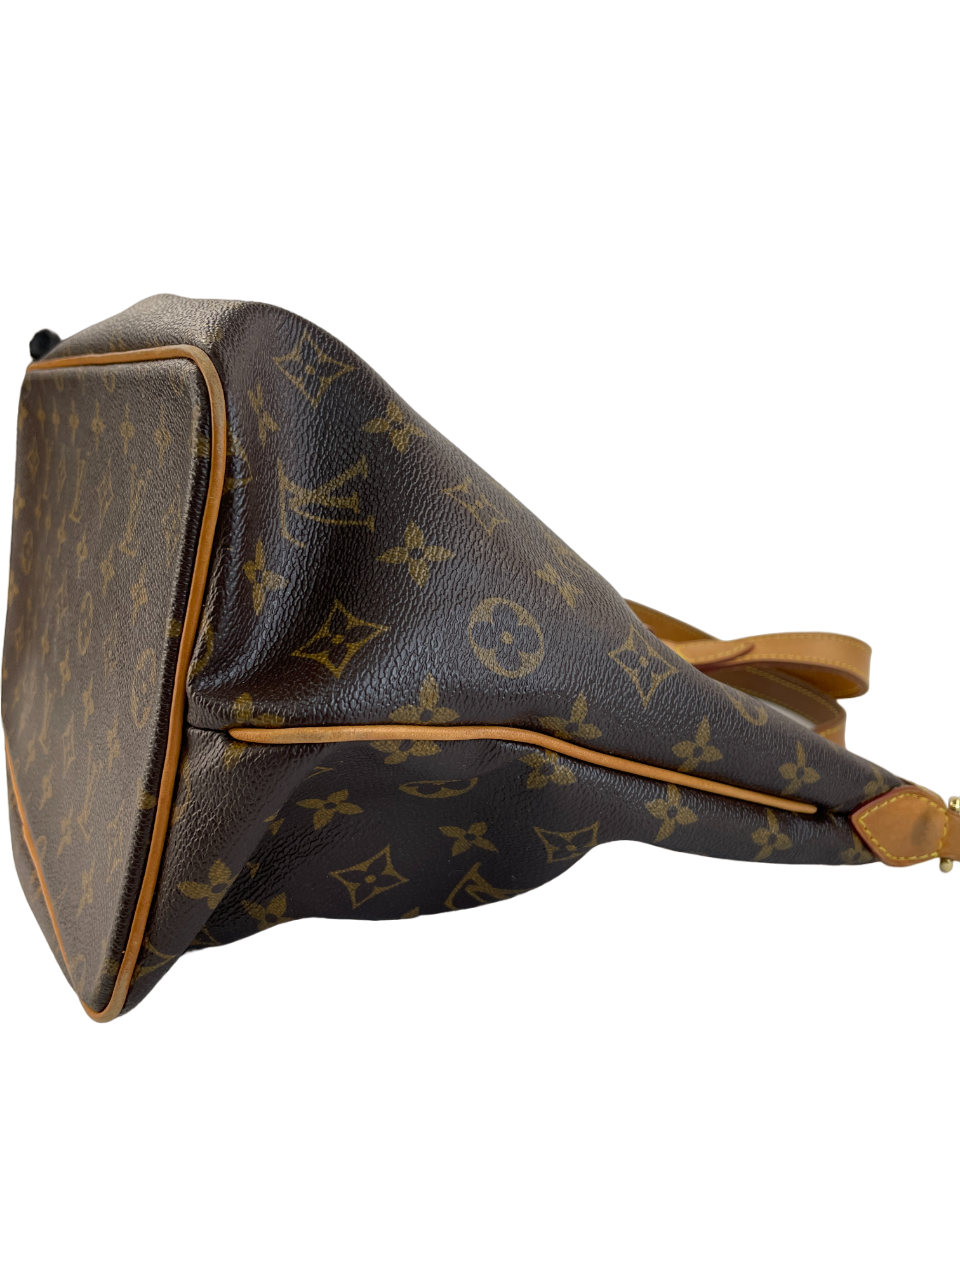 Louis Vuitton, Bags, Louis Vuitton Monogram Canvas Palermo Pm Shoulder Bag